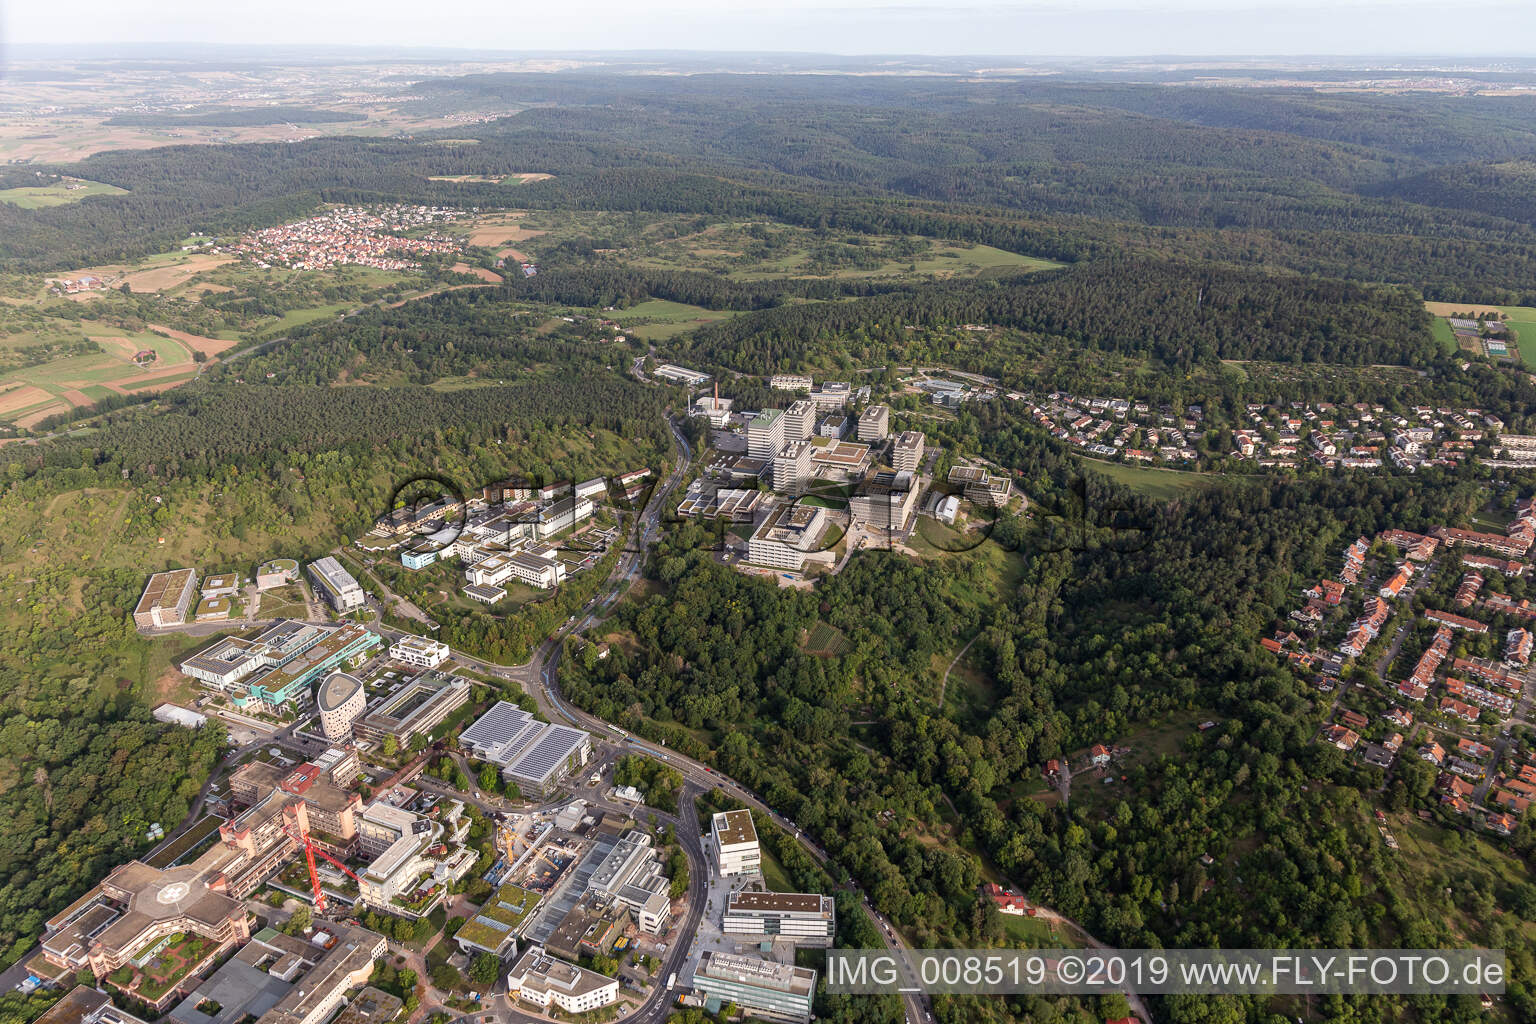 BG Klinik, Universität und Universitätsklinikum Tübingen im Bundesland Baden-Württemberg, Deutschland von oben gesehen